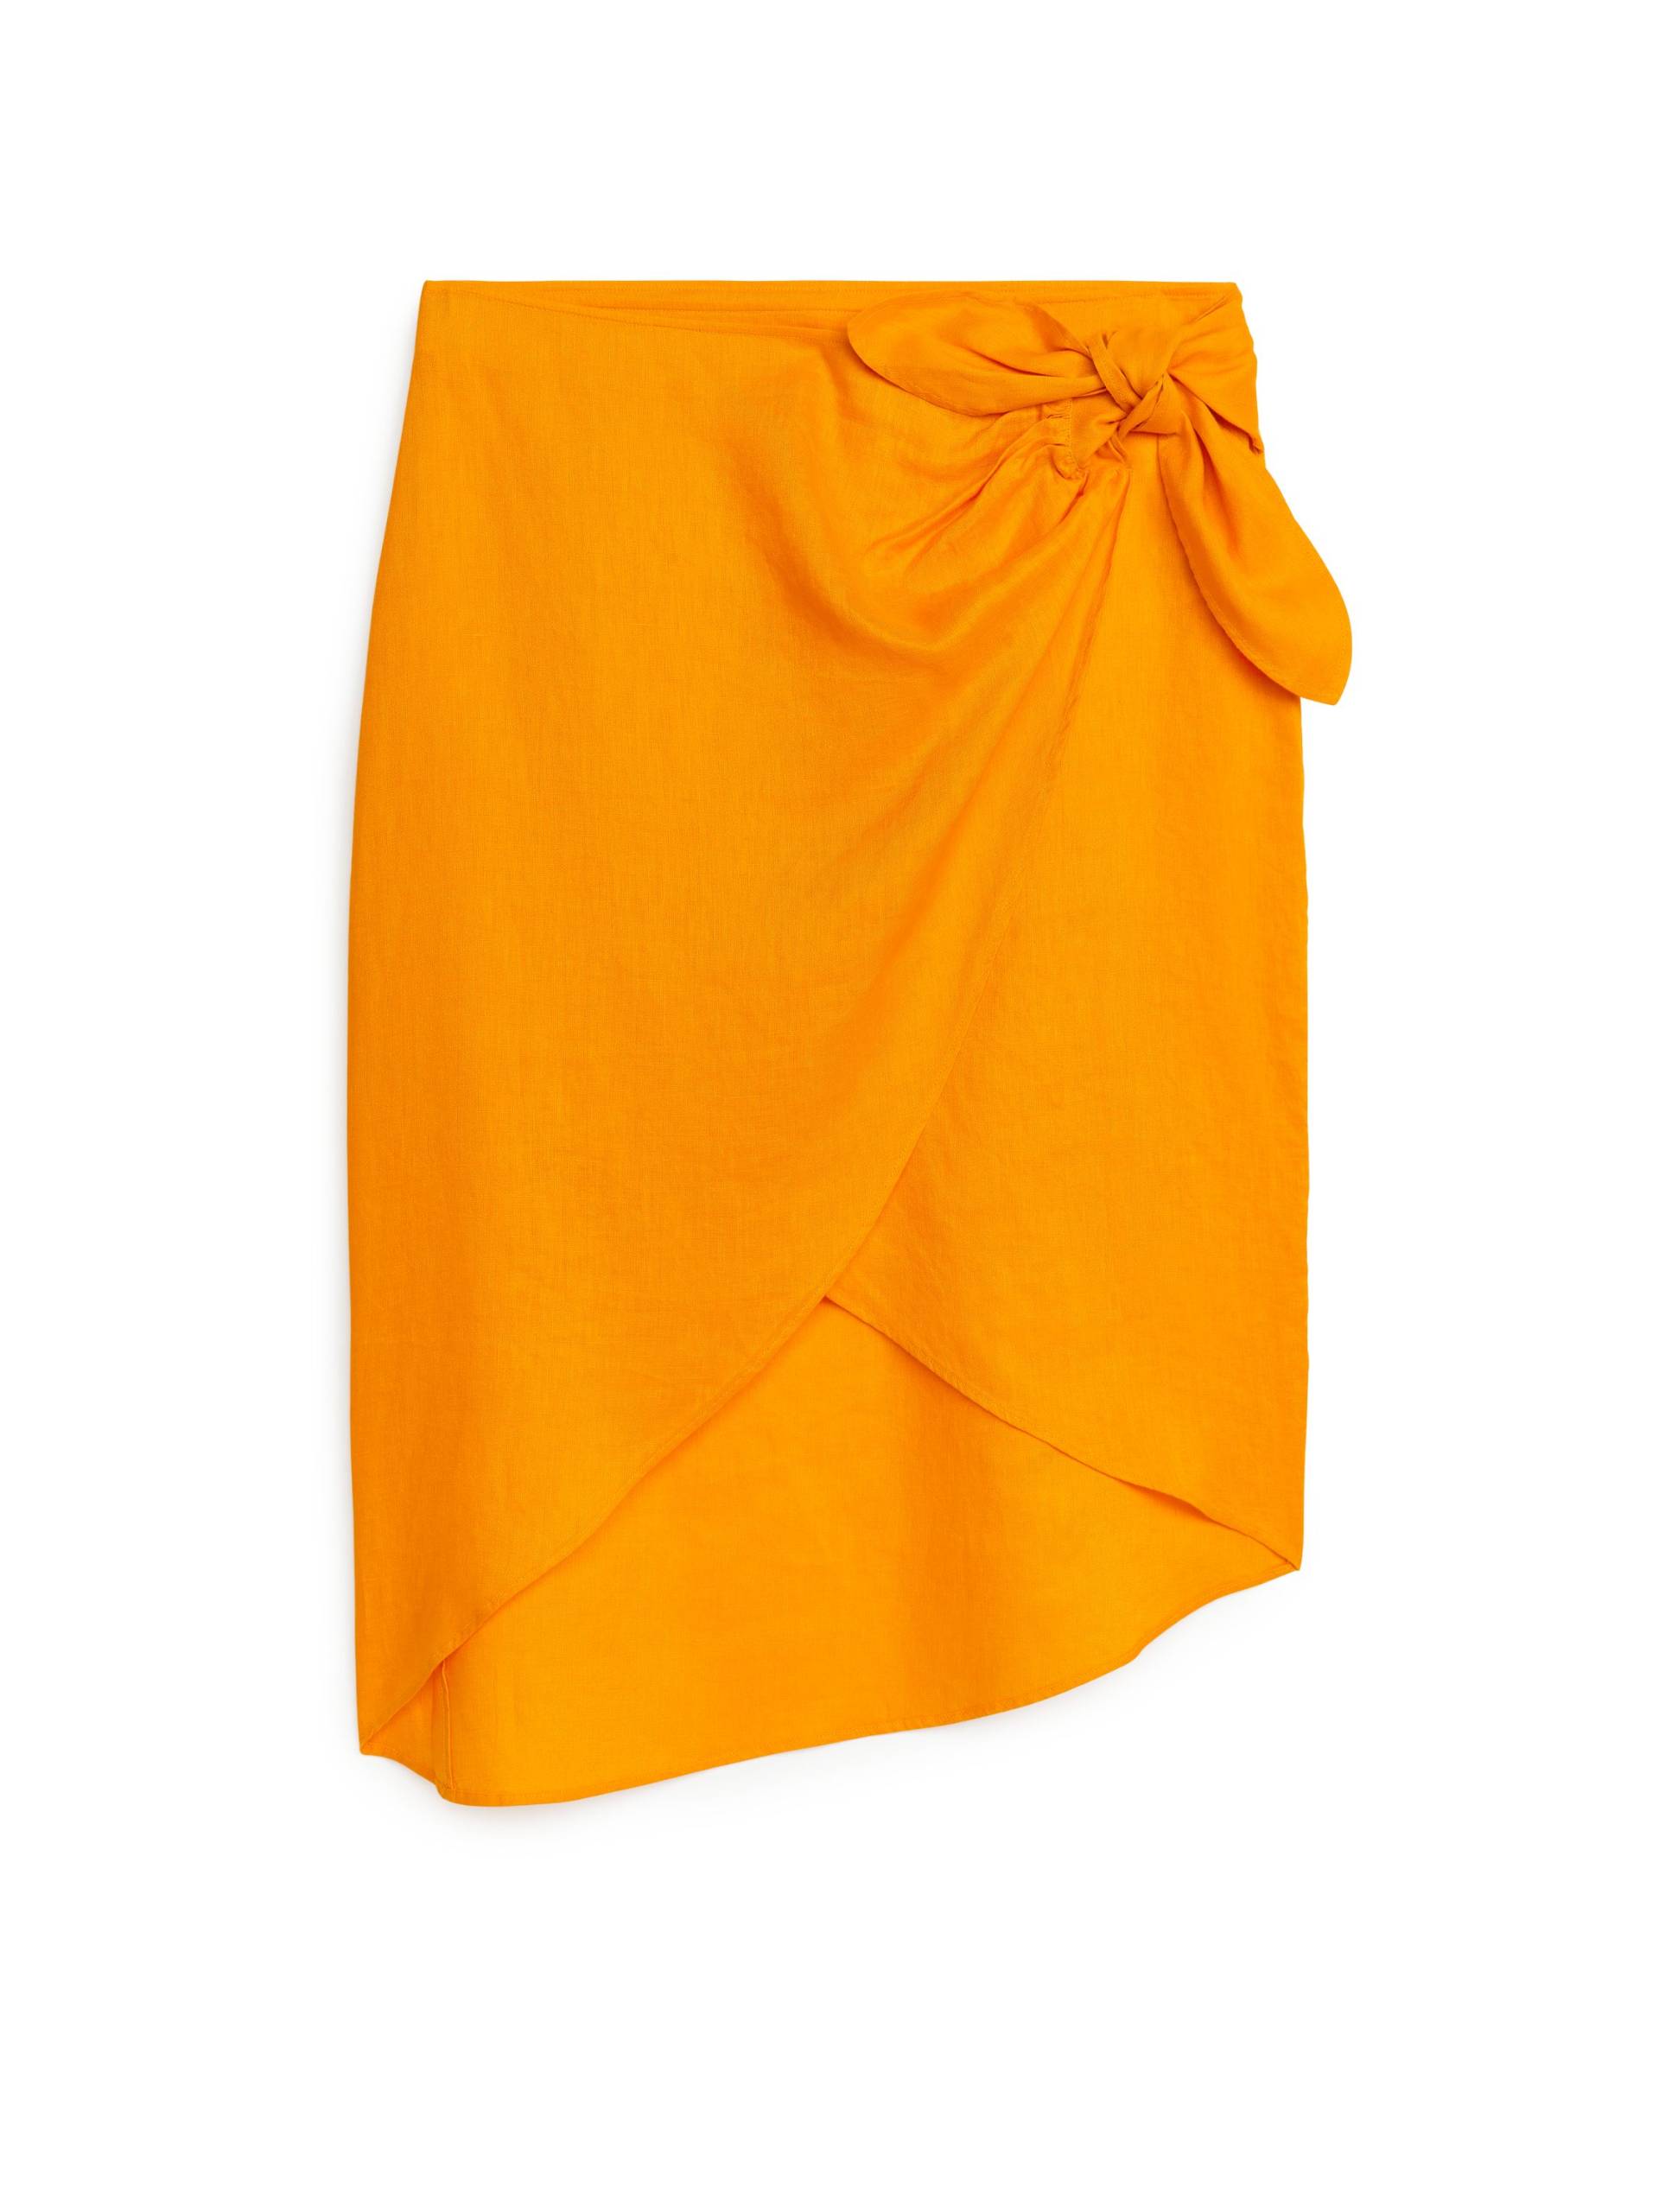 Arket Wickelrock aus Leinen Gelb, Röcke in Größe M. Farbe: Yellow von Arket